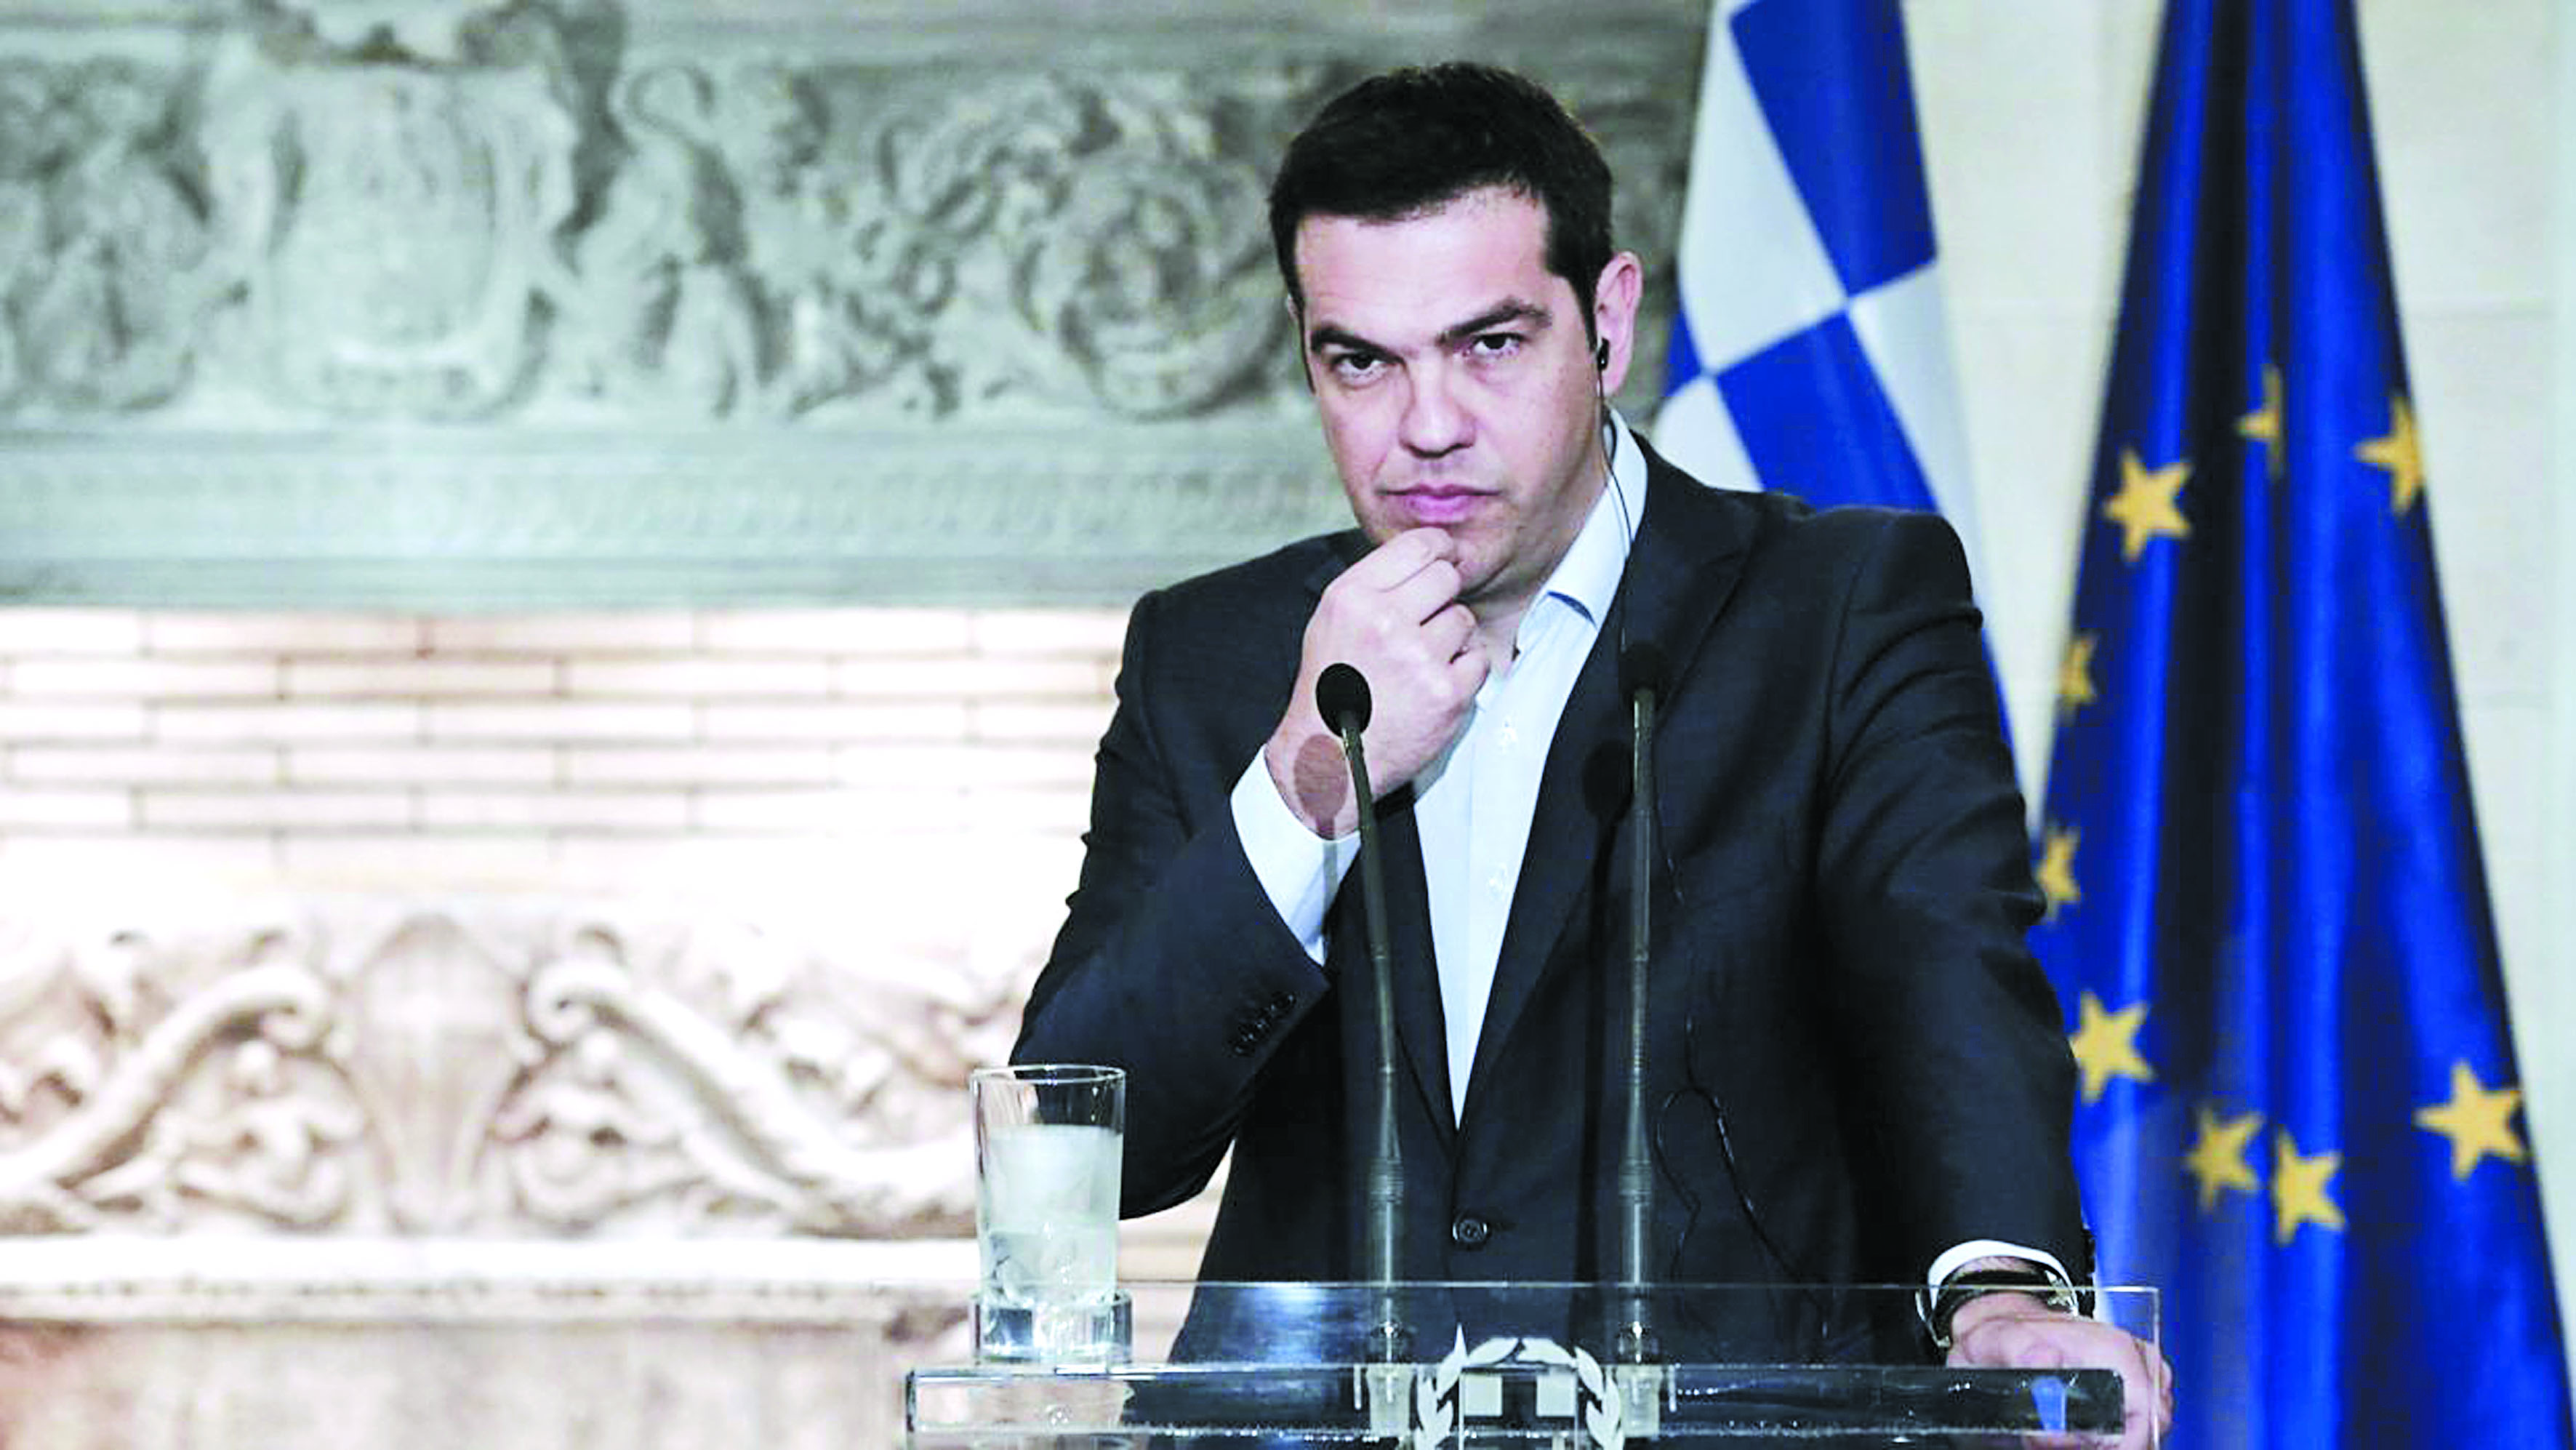 Les chefs des  institutions créancières arrivent en Grèce,  dans un climat  politique tendu